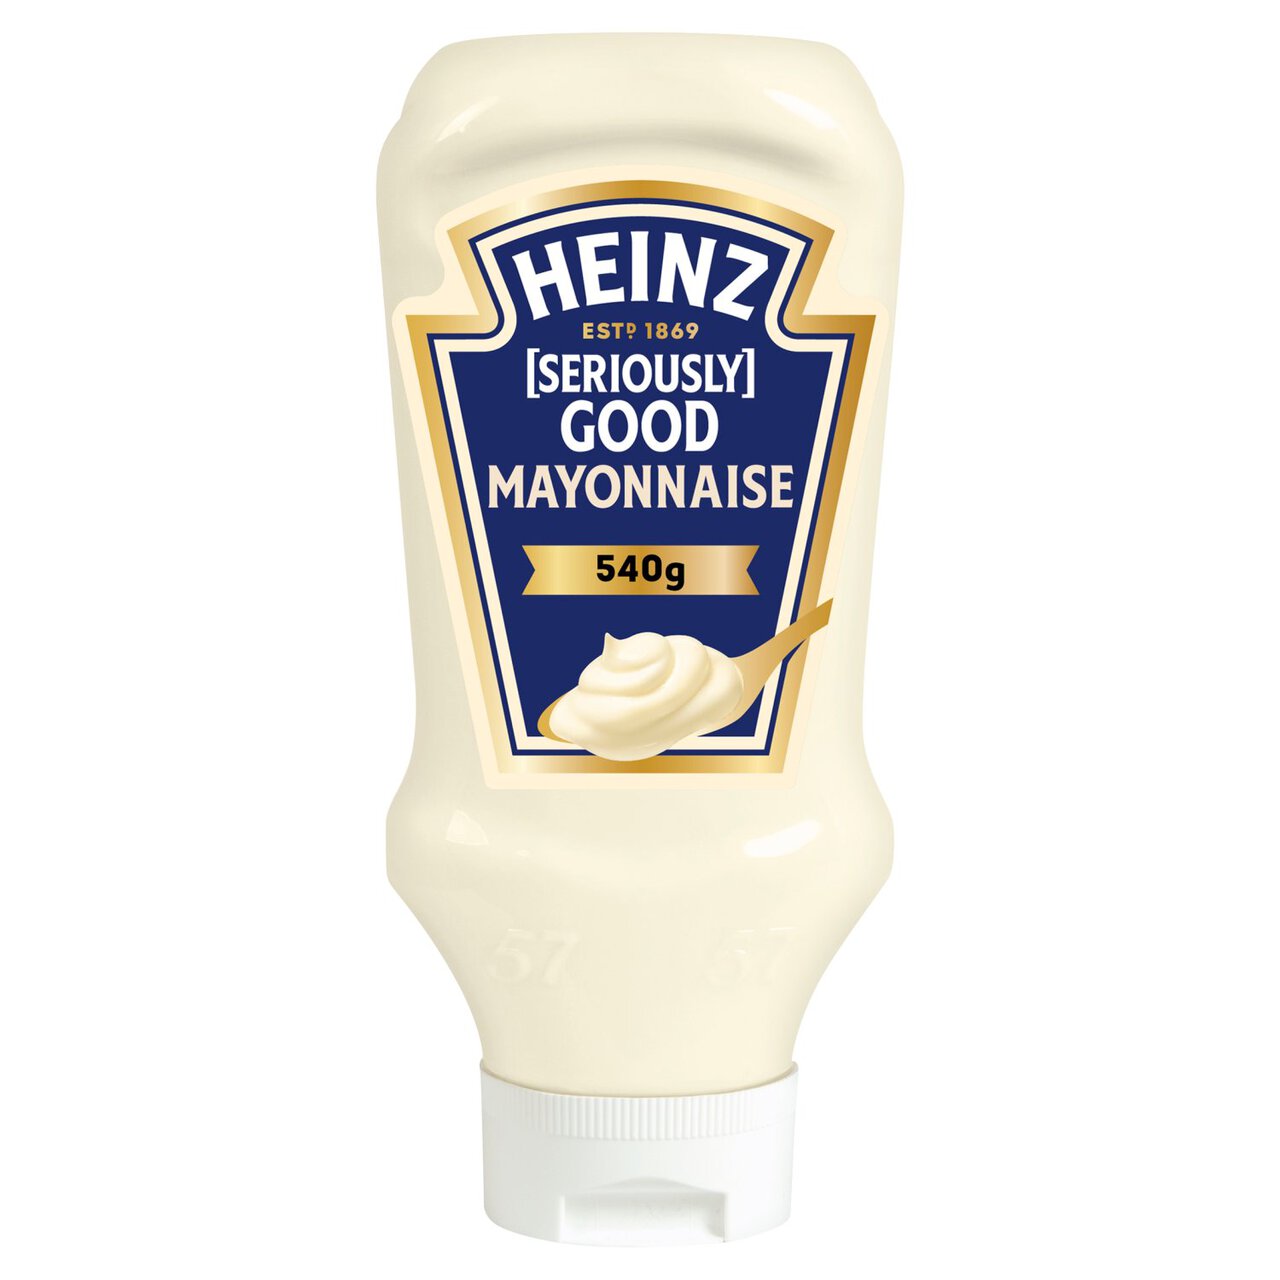 Heinz Seriously Good Mayonnaise 570ml